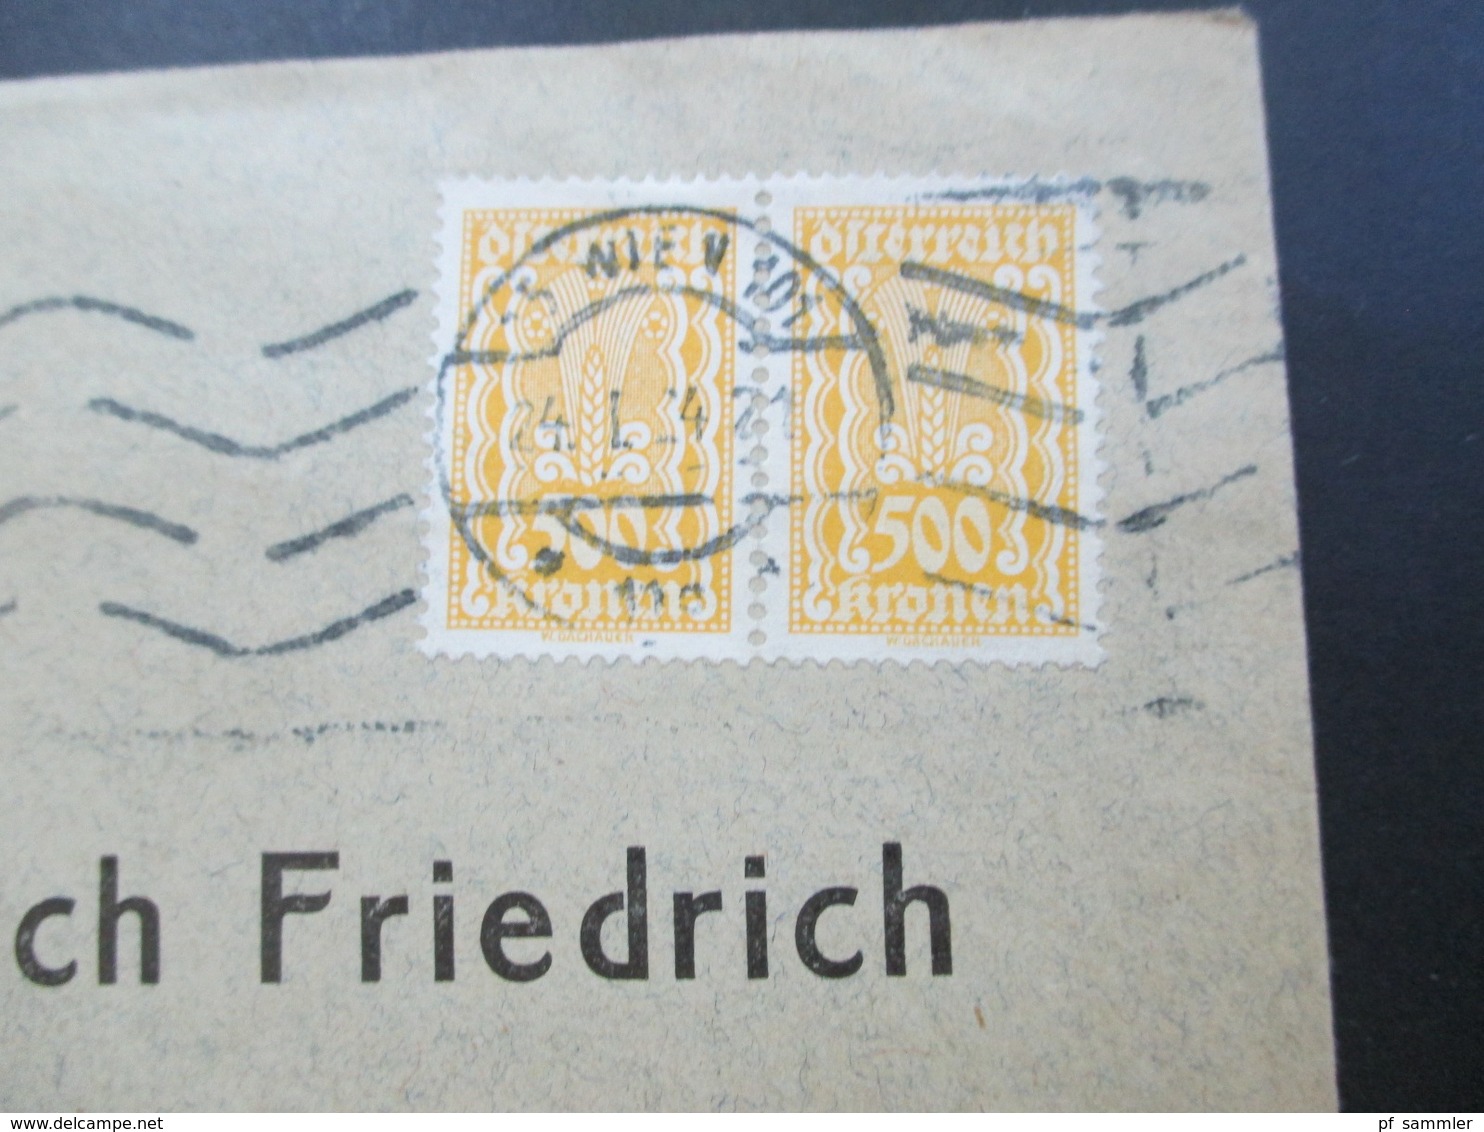 Österreich 1924 Freimarken Dachauer Nr. 387 Waagerechtes Paar MeF Siegfried Eauer Export Agentur Wien - Briefe U. Dokumente